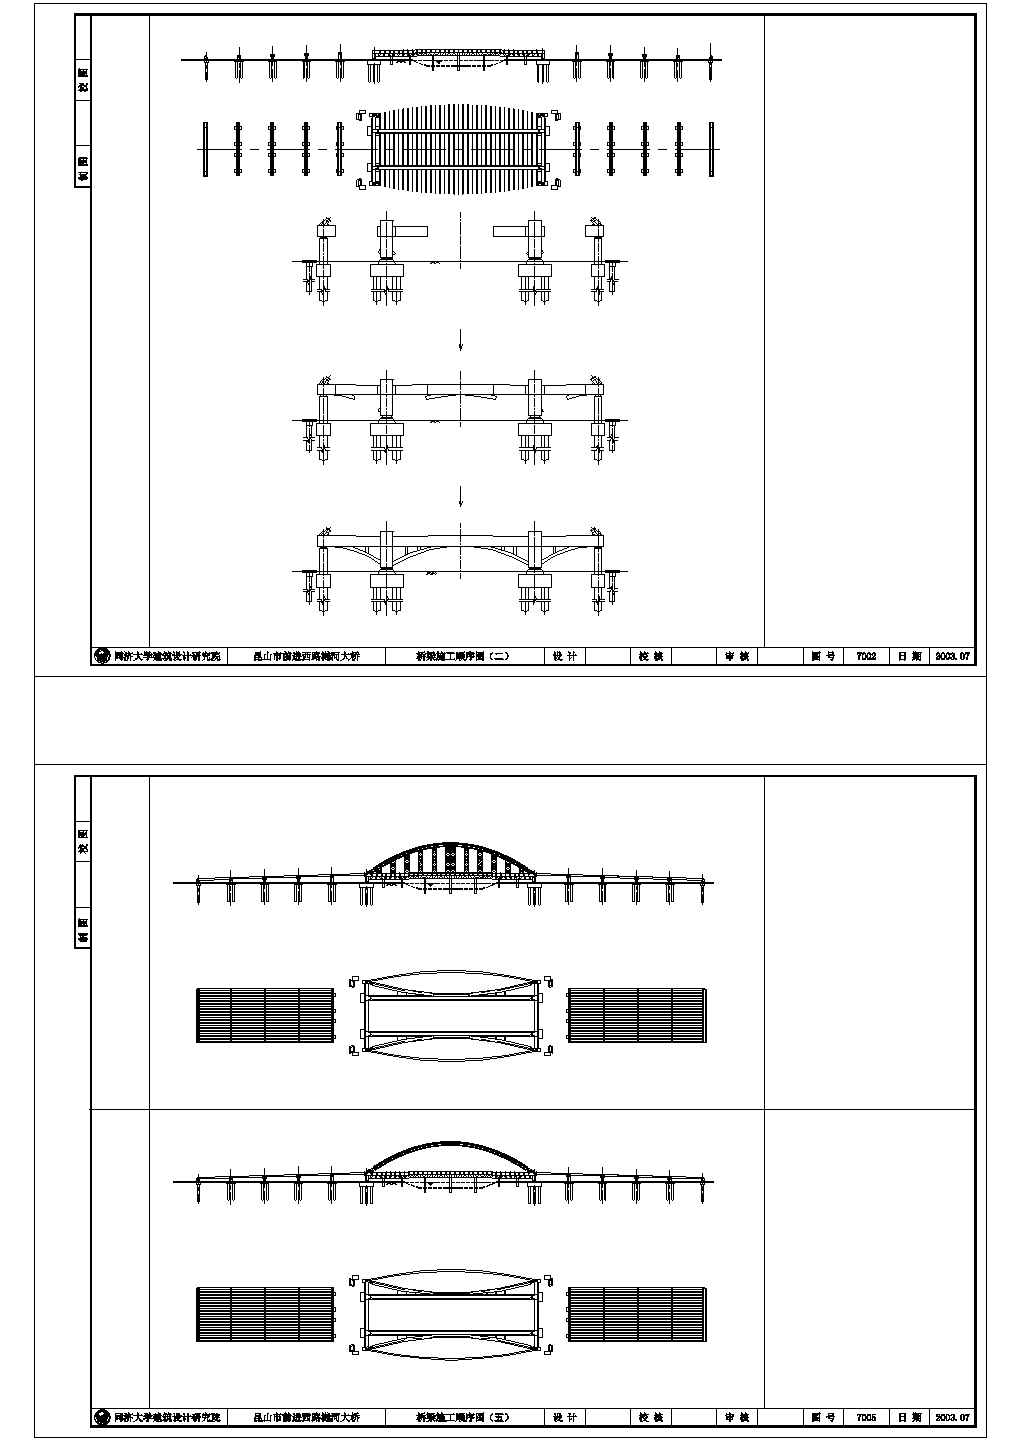 某樾河大桥施工图110米斜靠式拱桥CAD钢结构设计图-带观光台